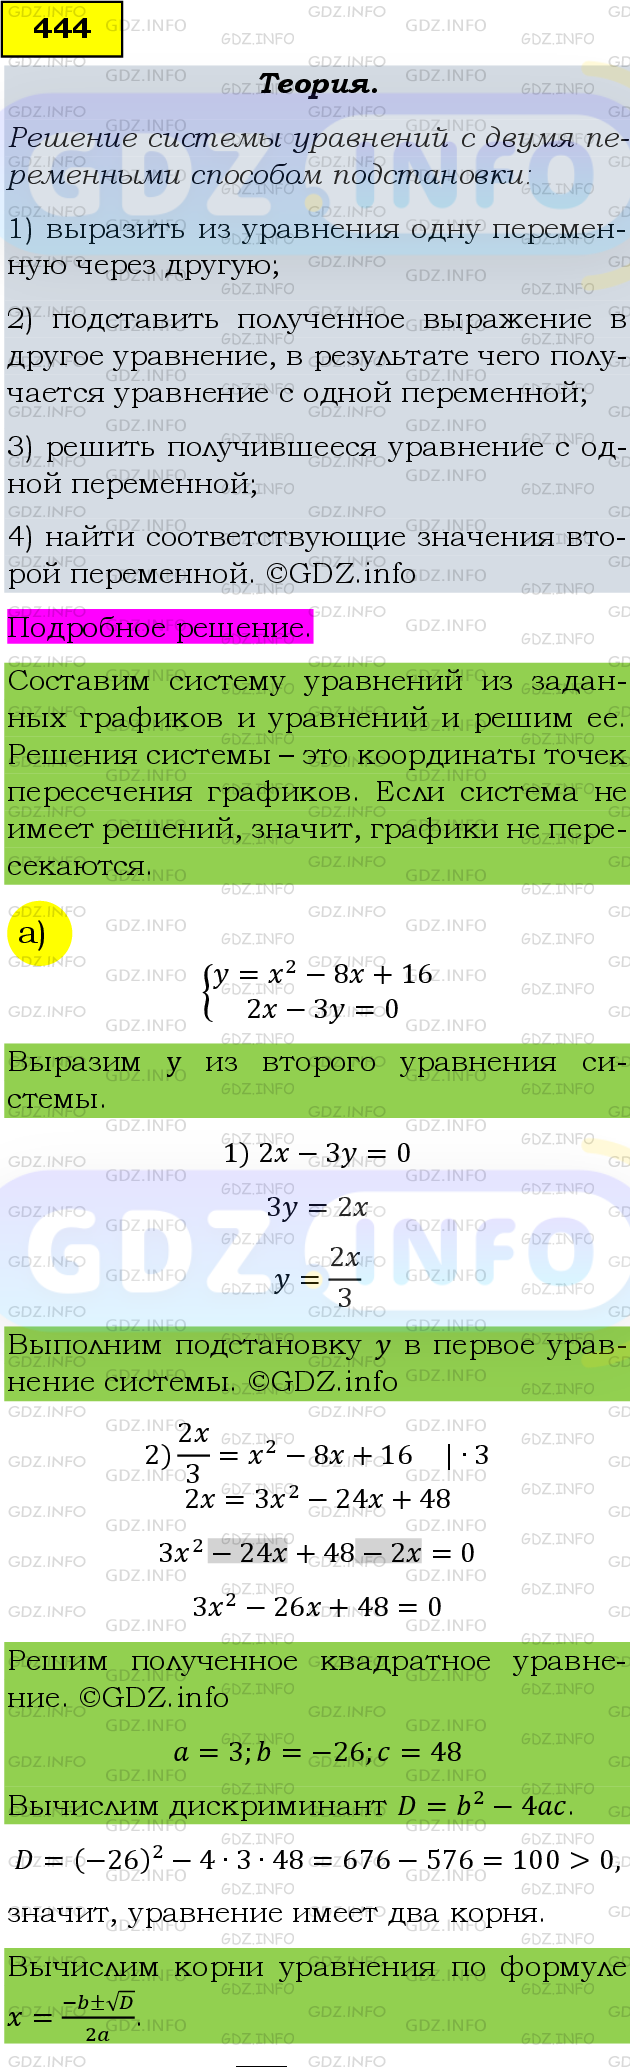 Фото подробного решения: Номер задания №444 из ГДЗ по Алгебре 9 класс: Макарычев Ю.Н.